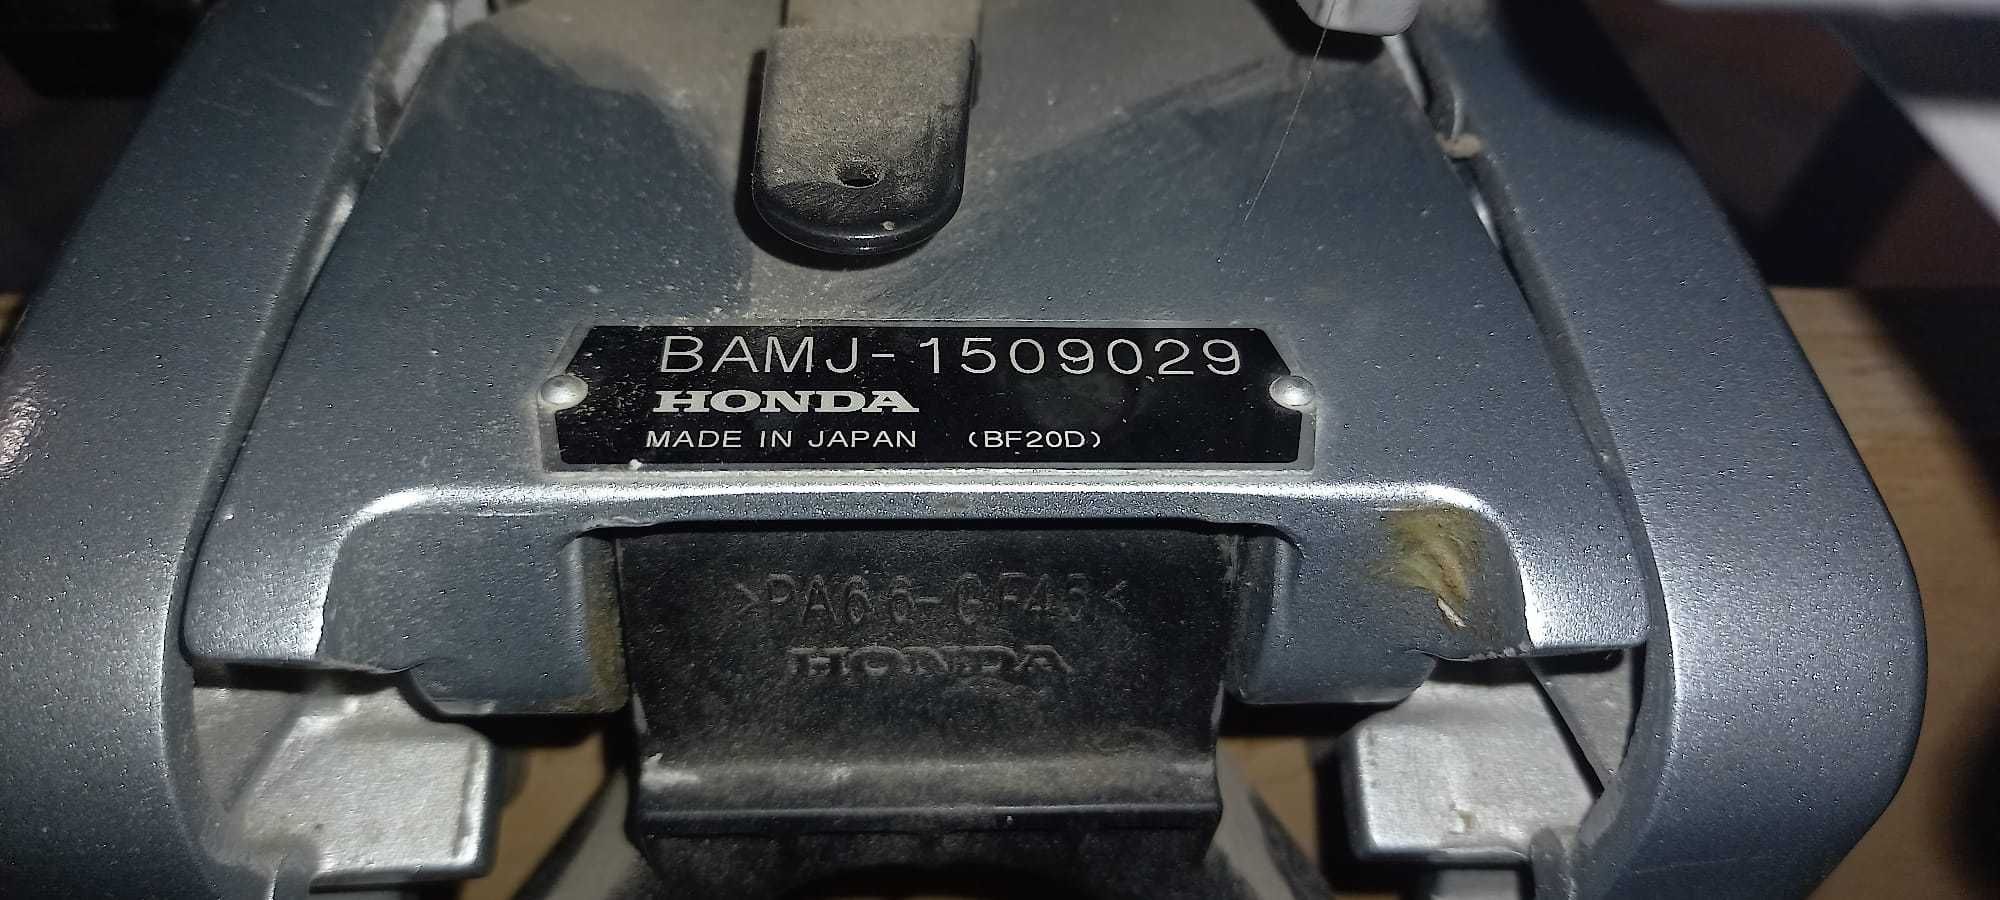 Motor Honda BF20D